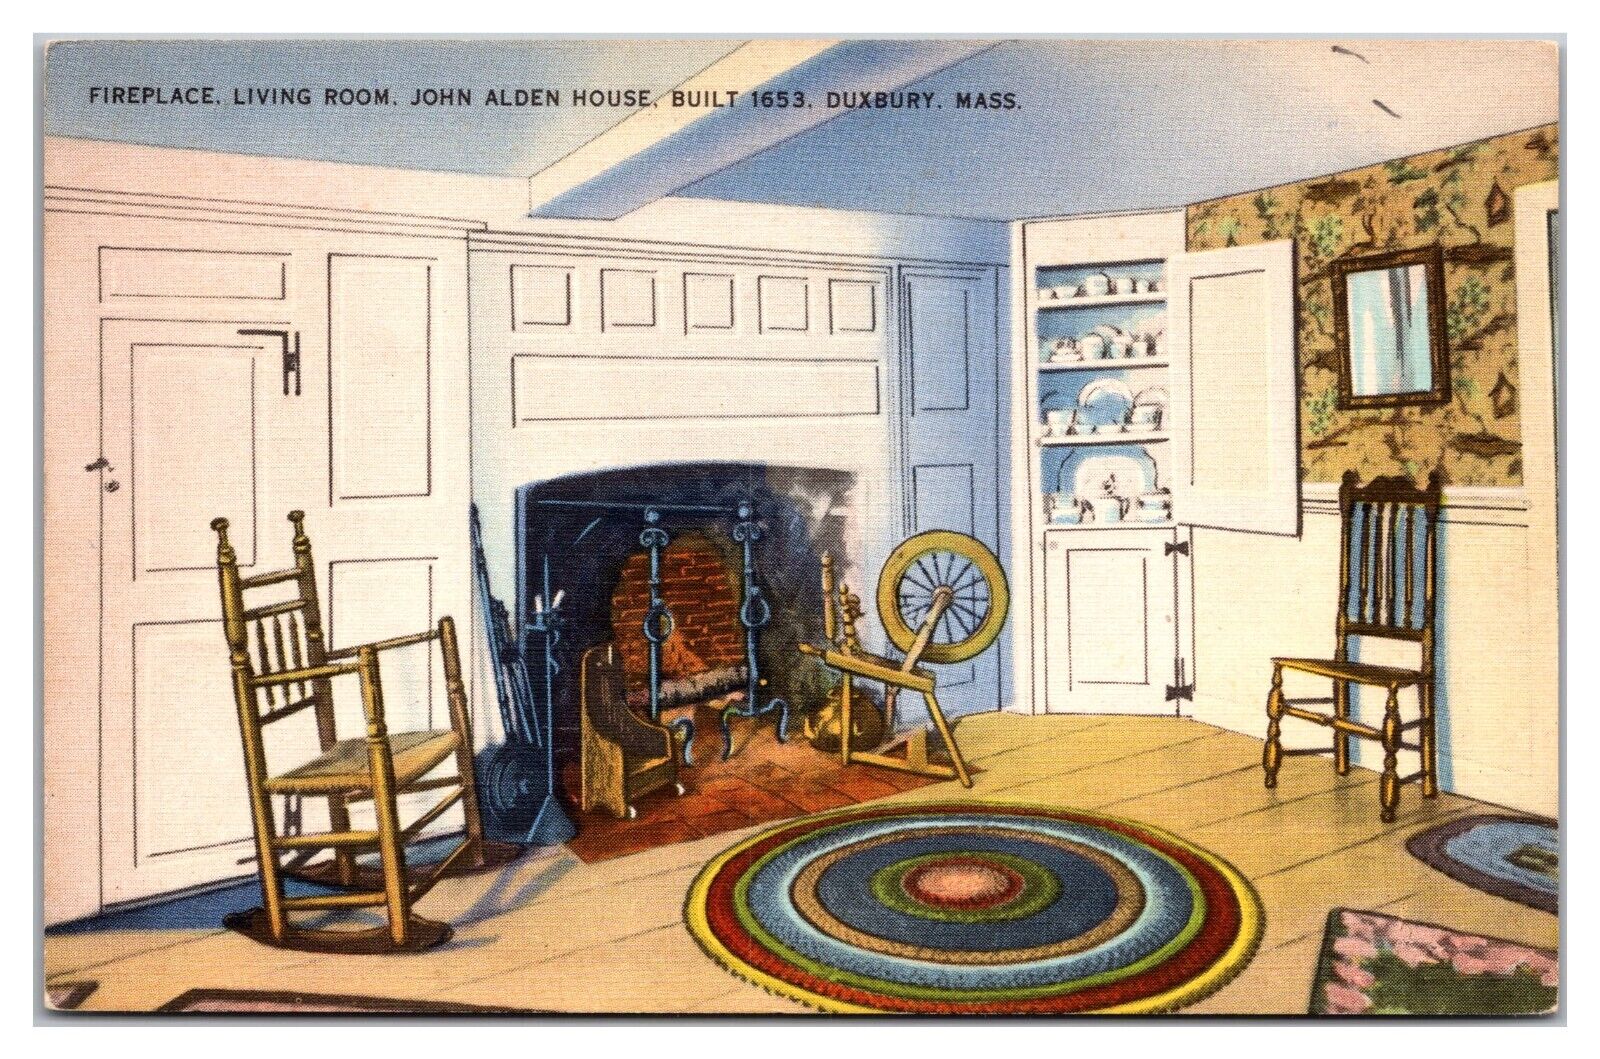 Fireplace, Living Room John Alden House, Built 1653, Duxbury, Massachusetts